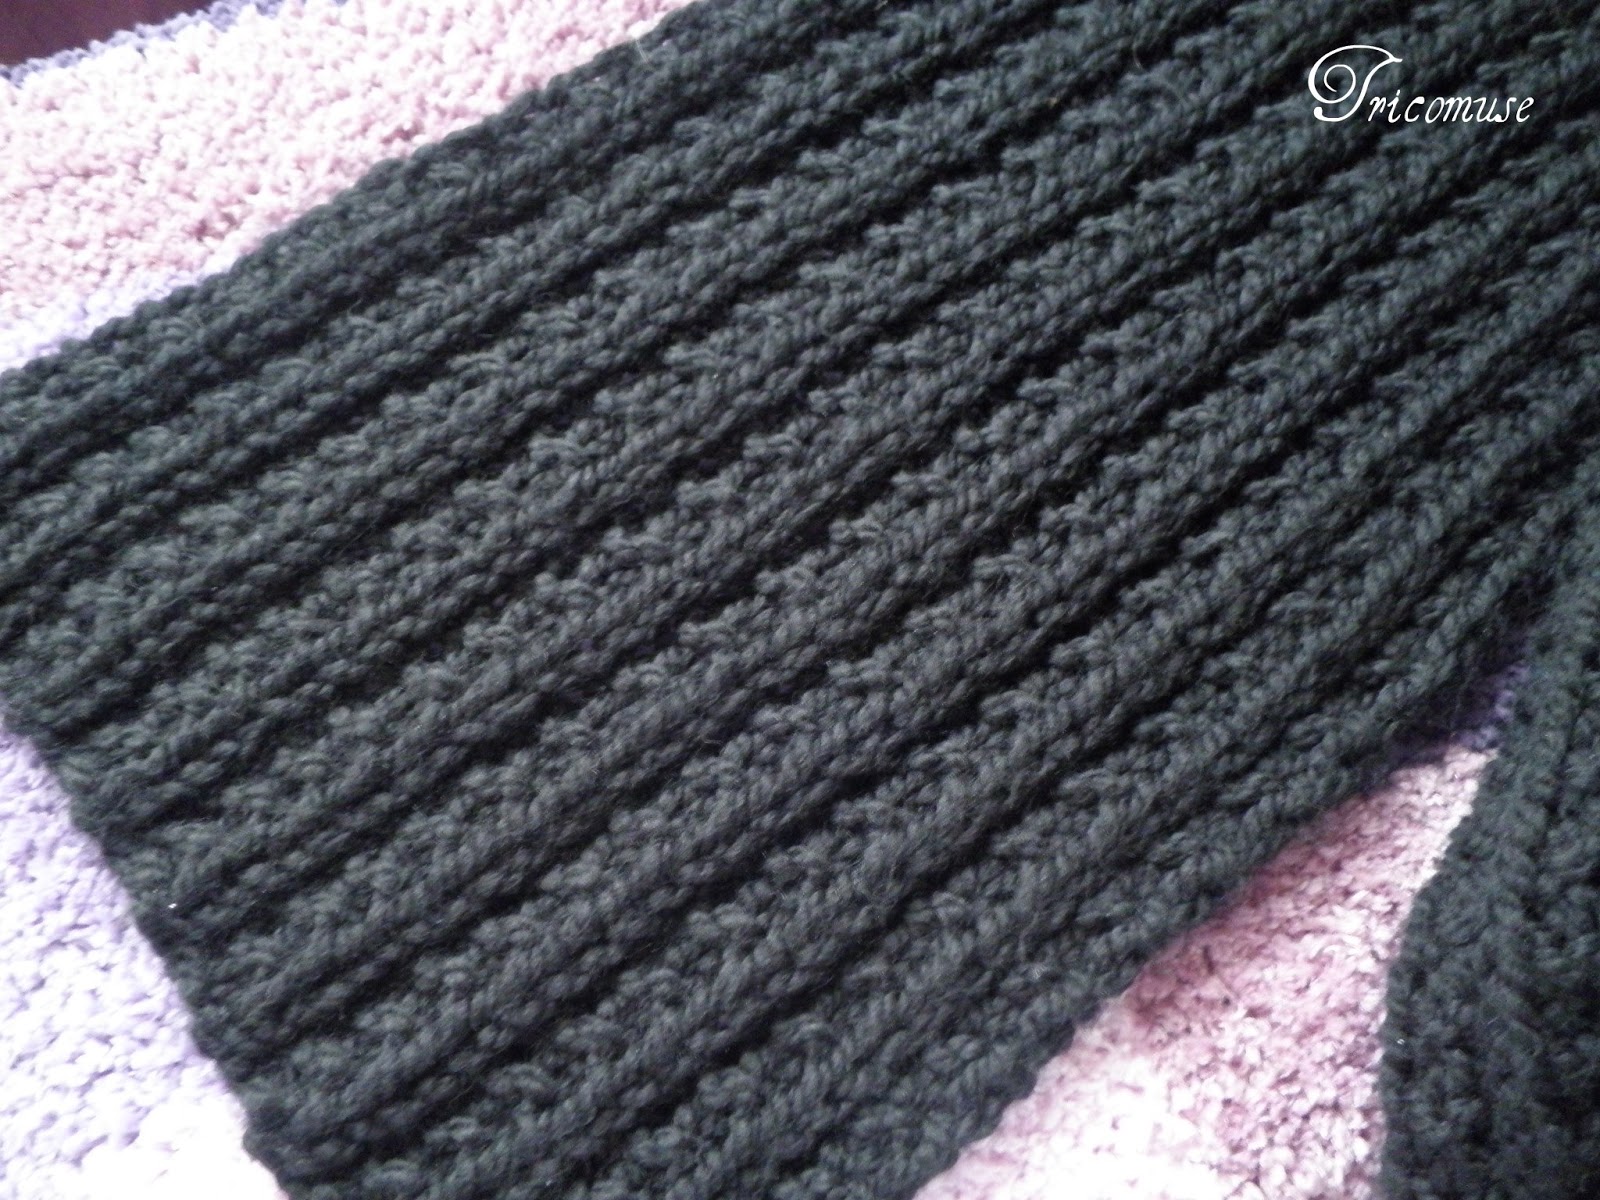 tricoter une echarpe d'homme